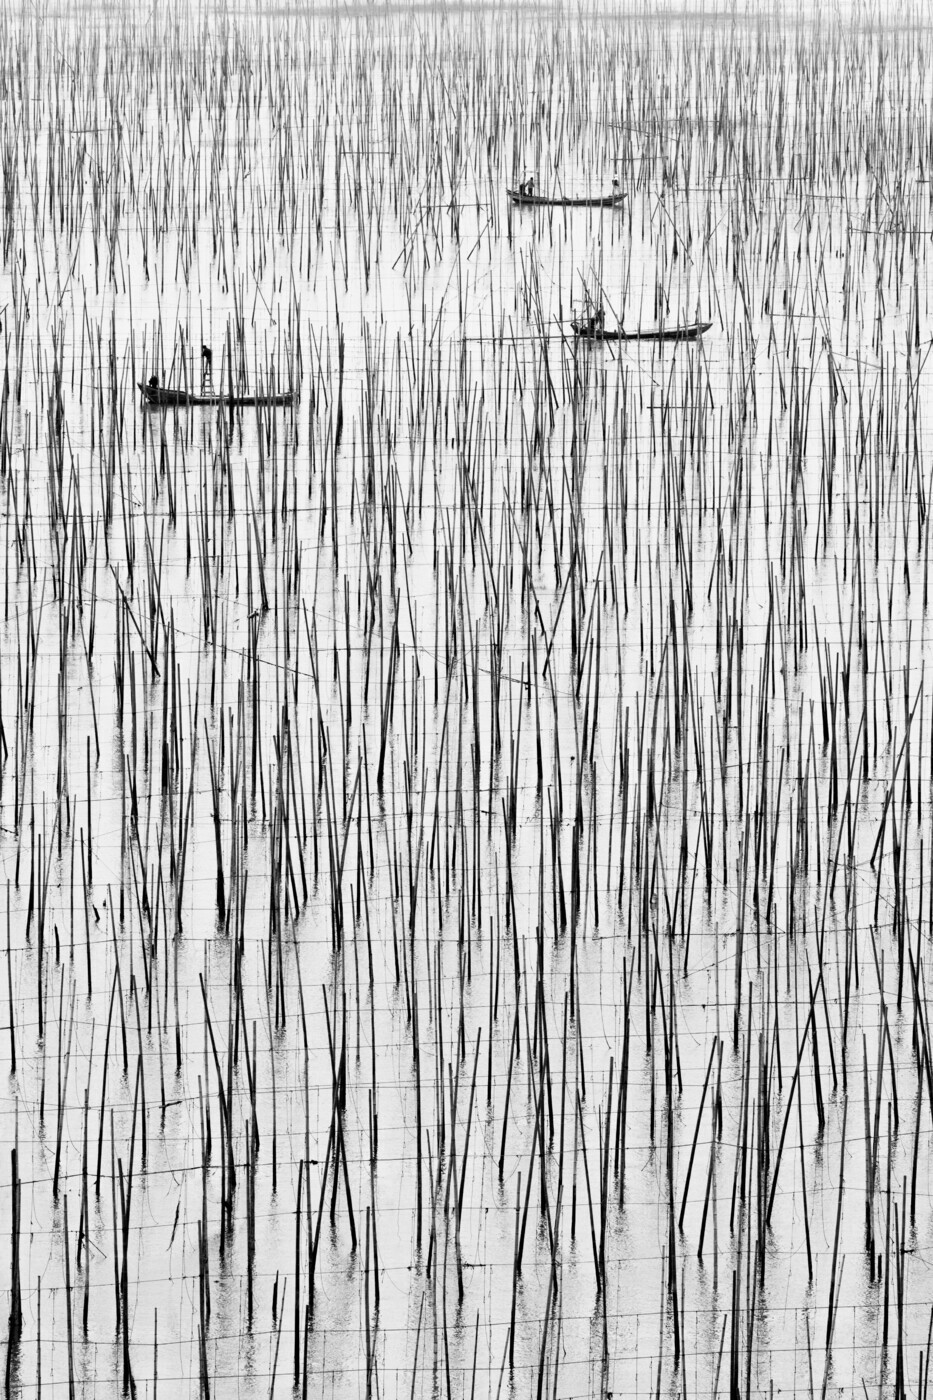 2 место в категории Аэрофотография среди любителей, 2021. Выращивание морских водорослей в провинции Фуцзянь, Китай. Автор Джо Ван Россем